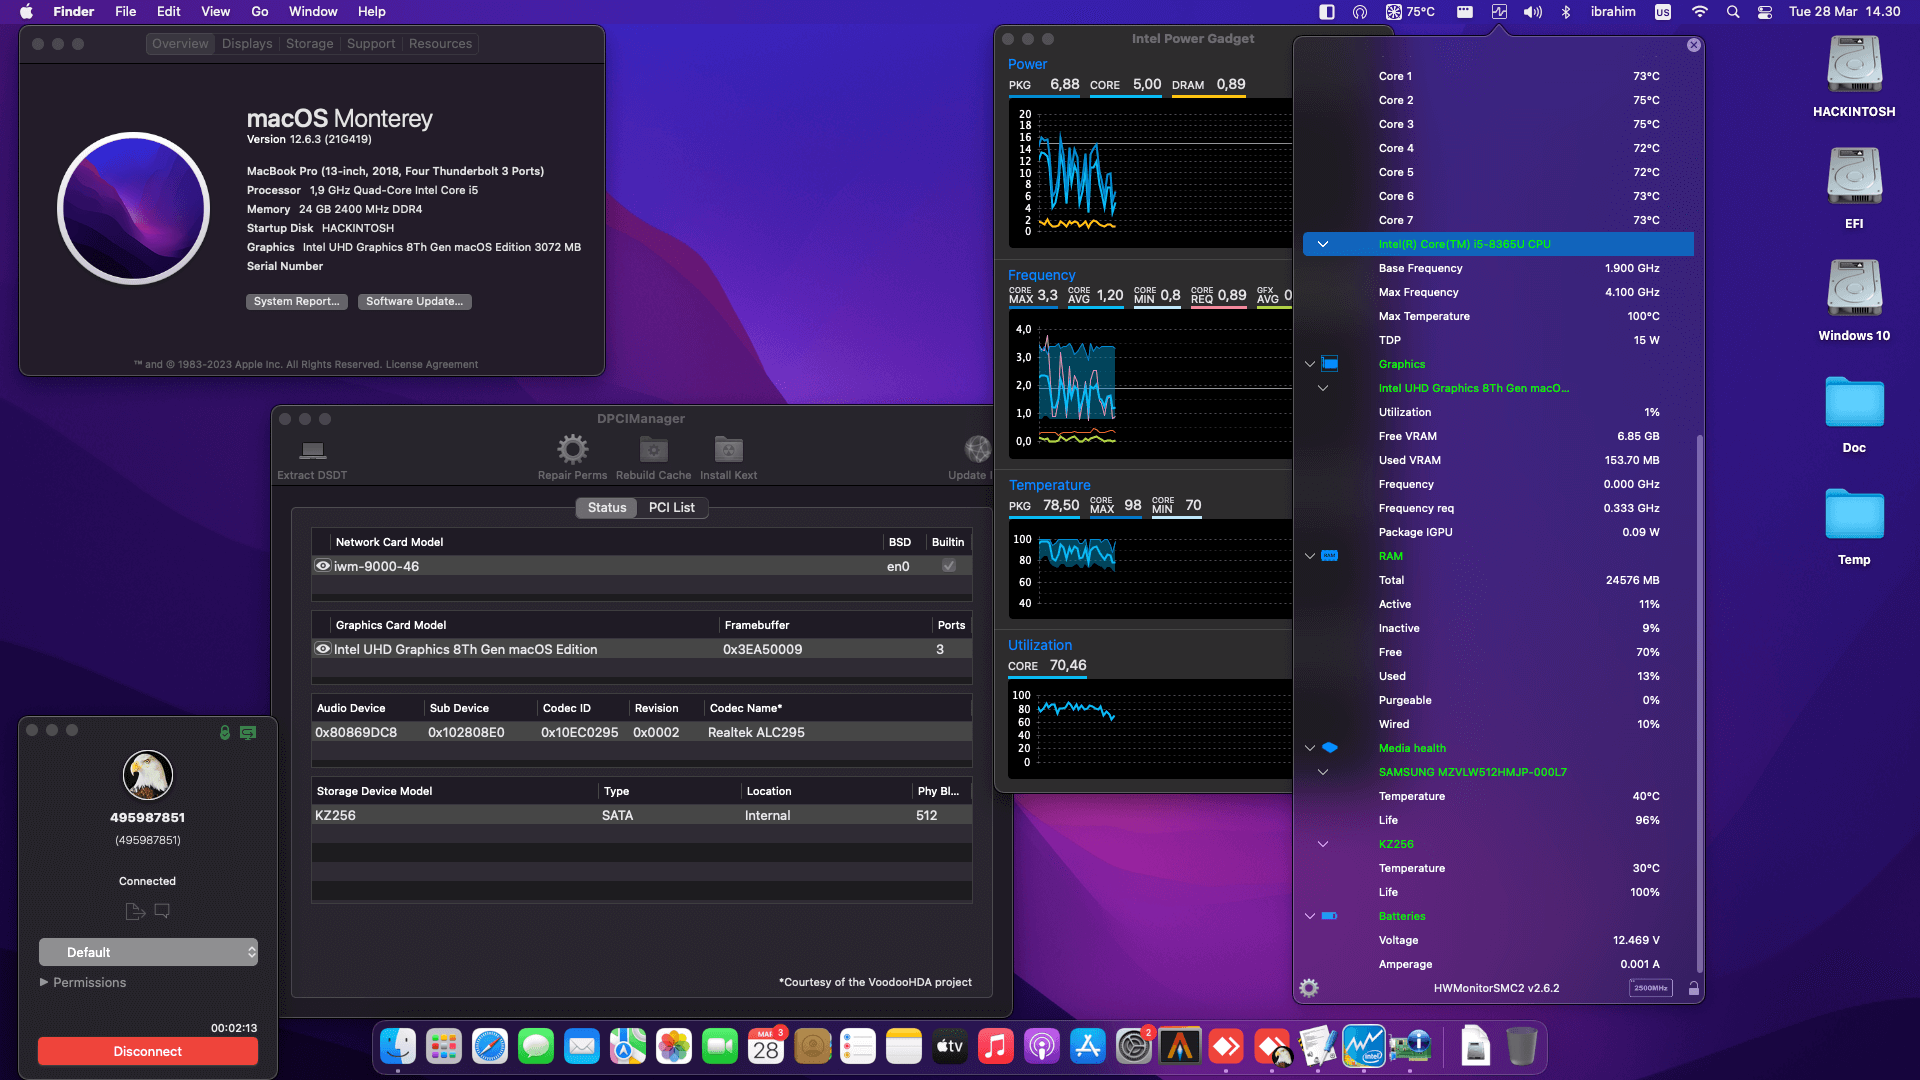 Success Hackintosh macOS Monterey 12.6.3 Build 21G419 in Dell Latitude 7300